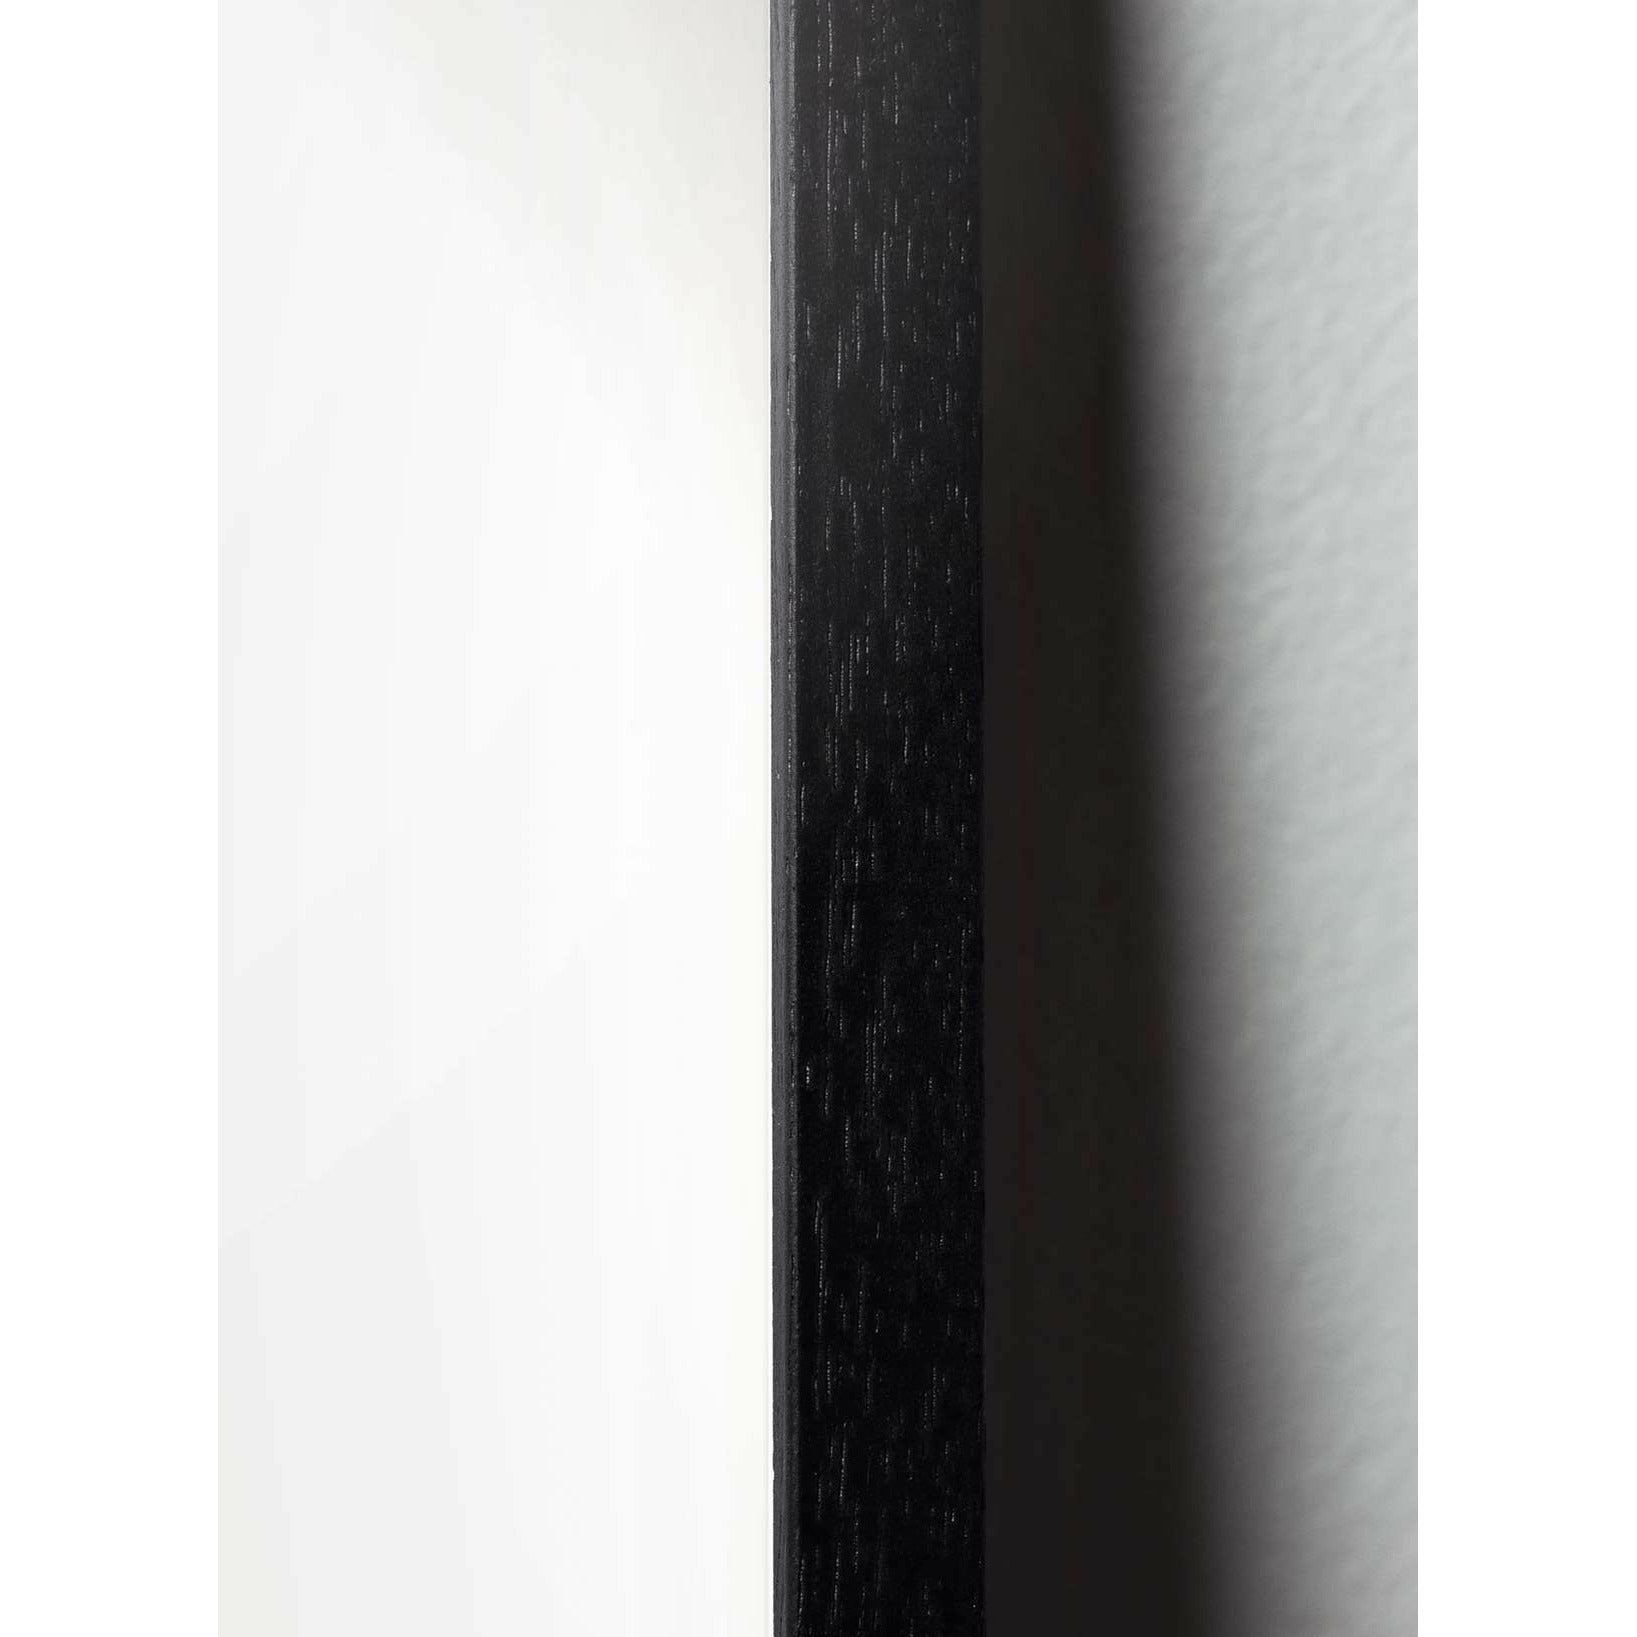 Poster di linea cigno da frutto, cornice in legno laccato nero 50x70 cm, sfondo bianco